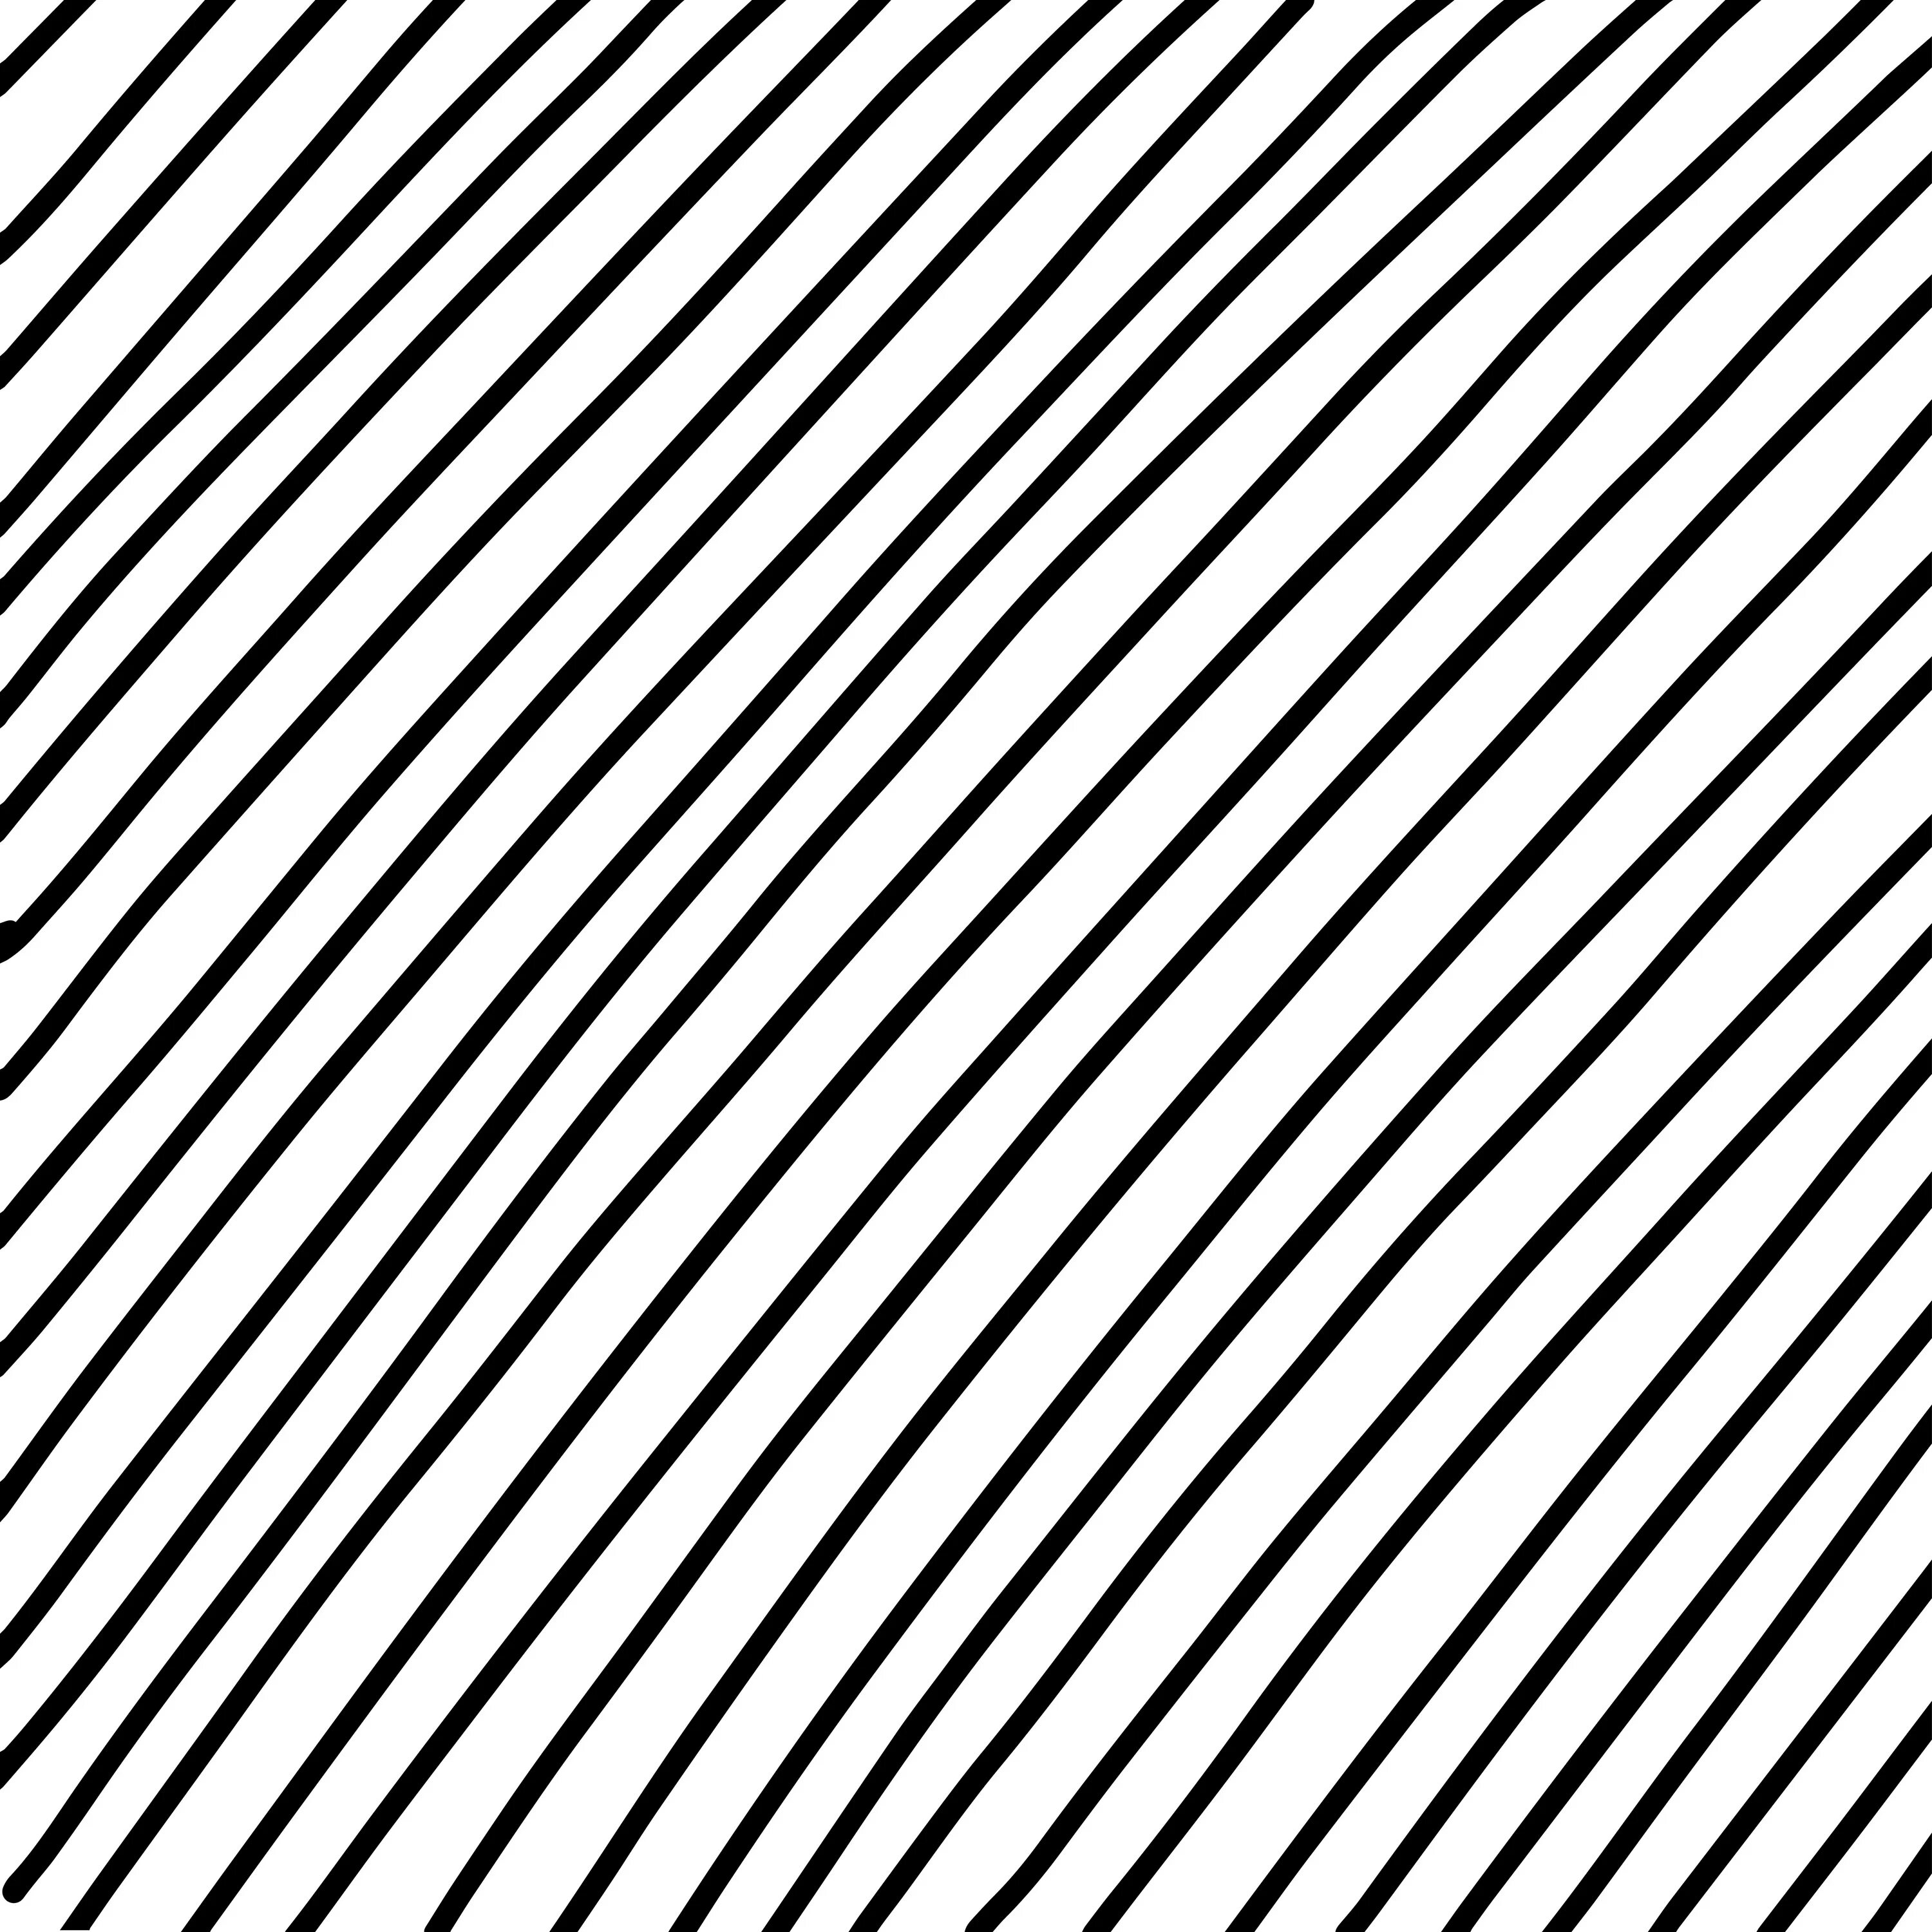 Прямая диагональ линия. Паттерн наклонные линии. Диагональные полосы. Диагональные линии текстура. Линии по диагонали.